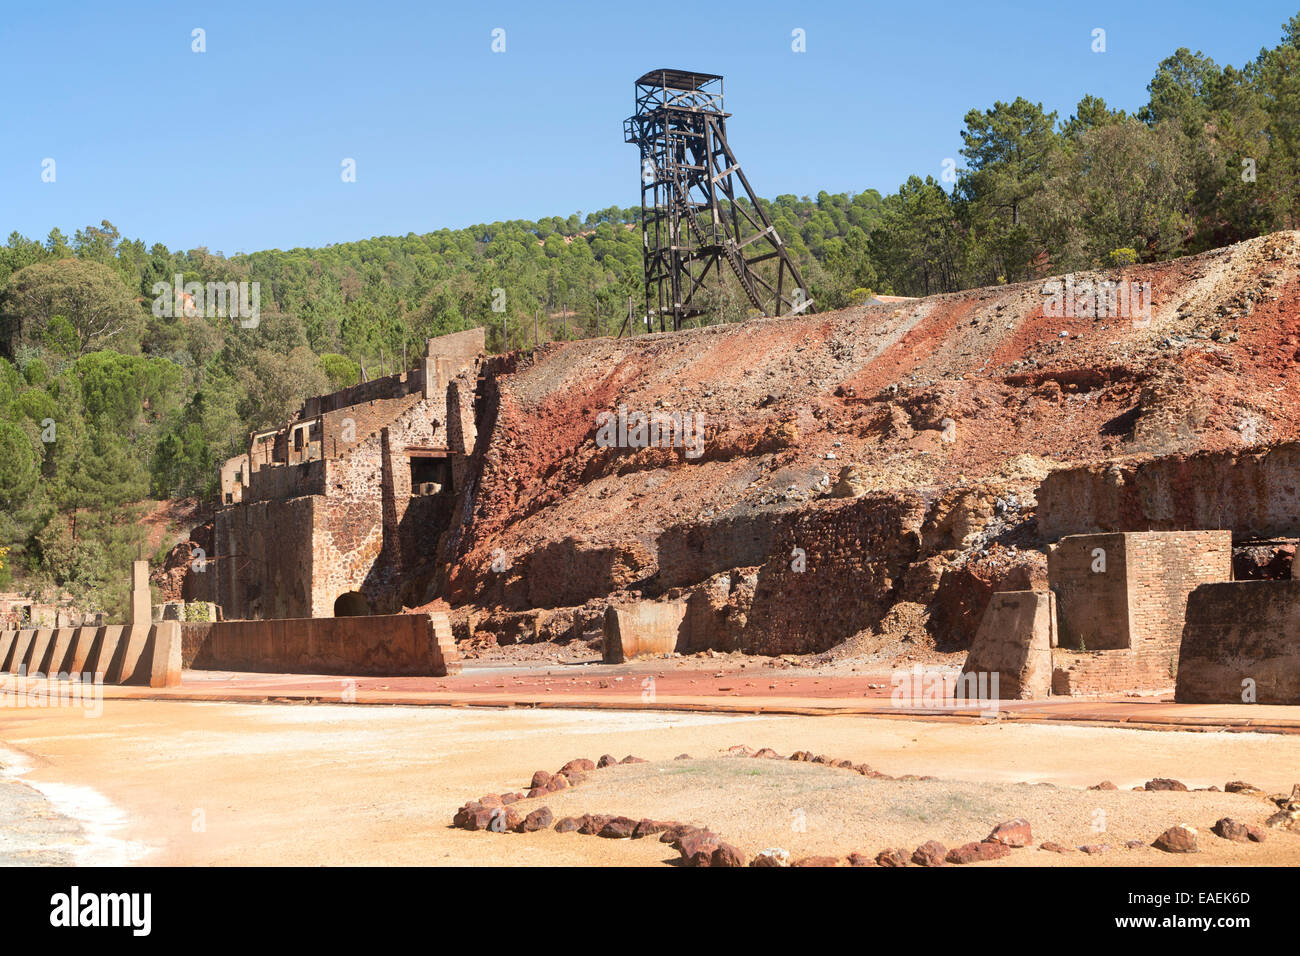 Peña del Hierro Mine, Minas de Riotinto, Rio Tinto mining area, Huelva province, Spain Stock Photo